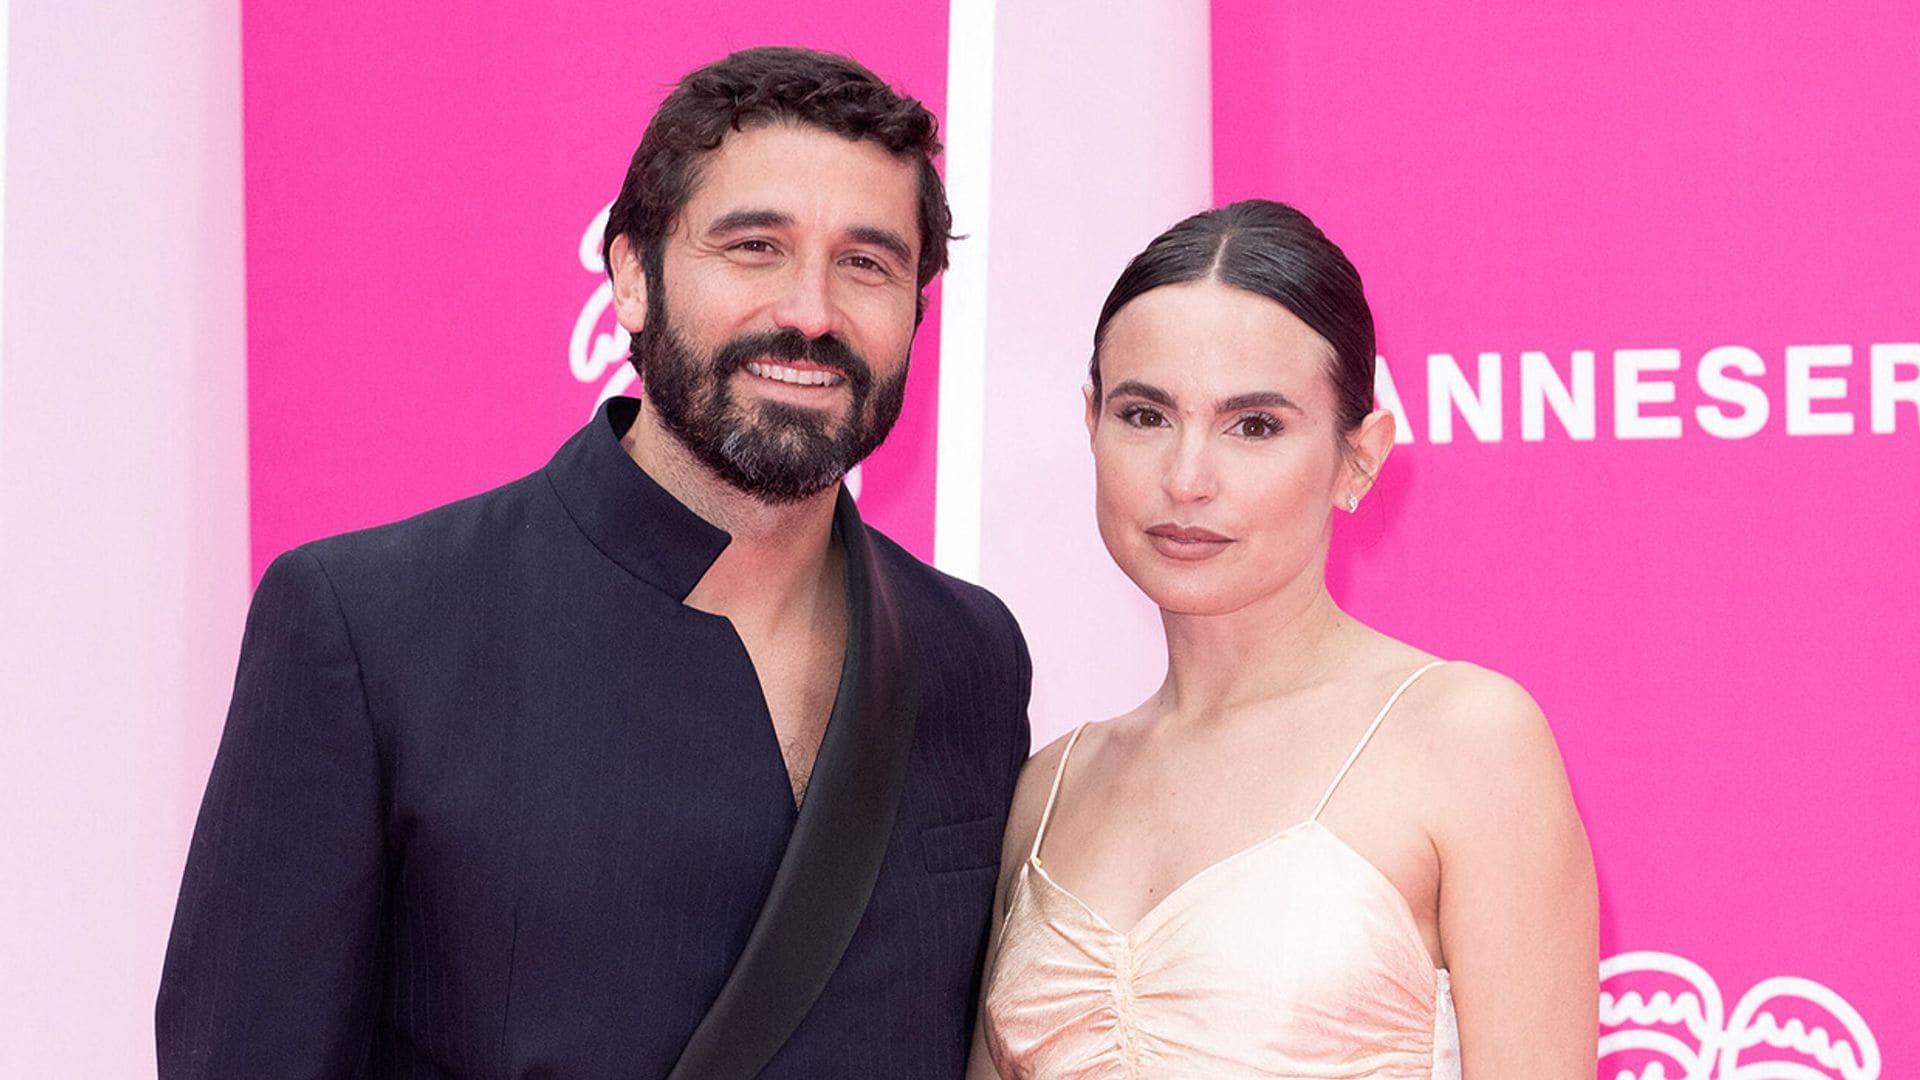 Verónica Echegui y Álex García reaparecen en Cannes tras la polémica del pasaporte covid